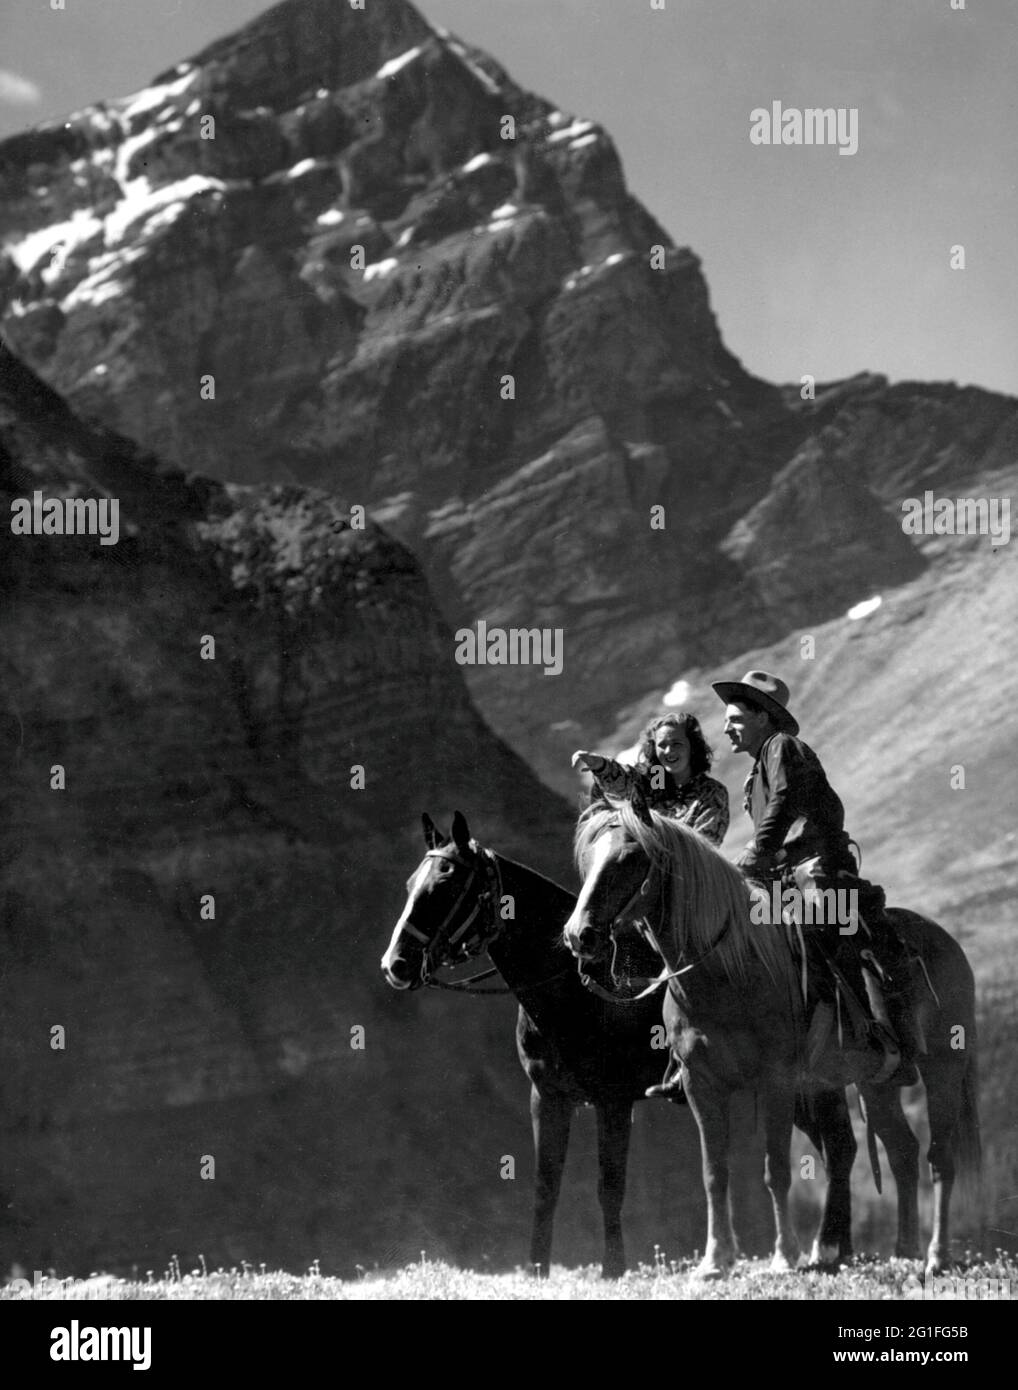 Geographie / Reisen, Kanada, Reittiere, Rocky Mountains, Cowboy und Cowgirl auf Pferden vor dem Massiv, ZUSÄTZLICHE-RIGHTS-CLEARANCE-INFO-NOT-AVAILABLE Stockfoto